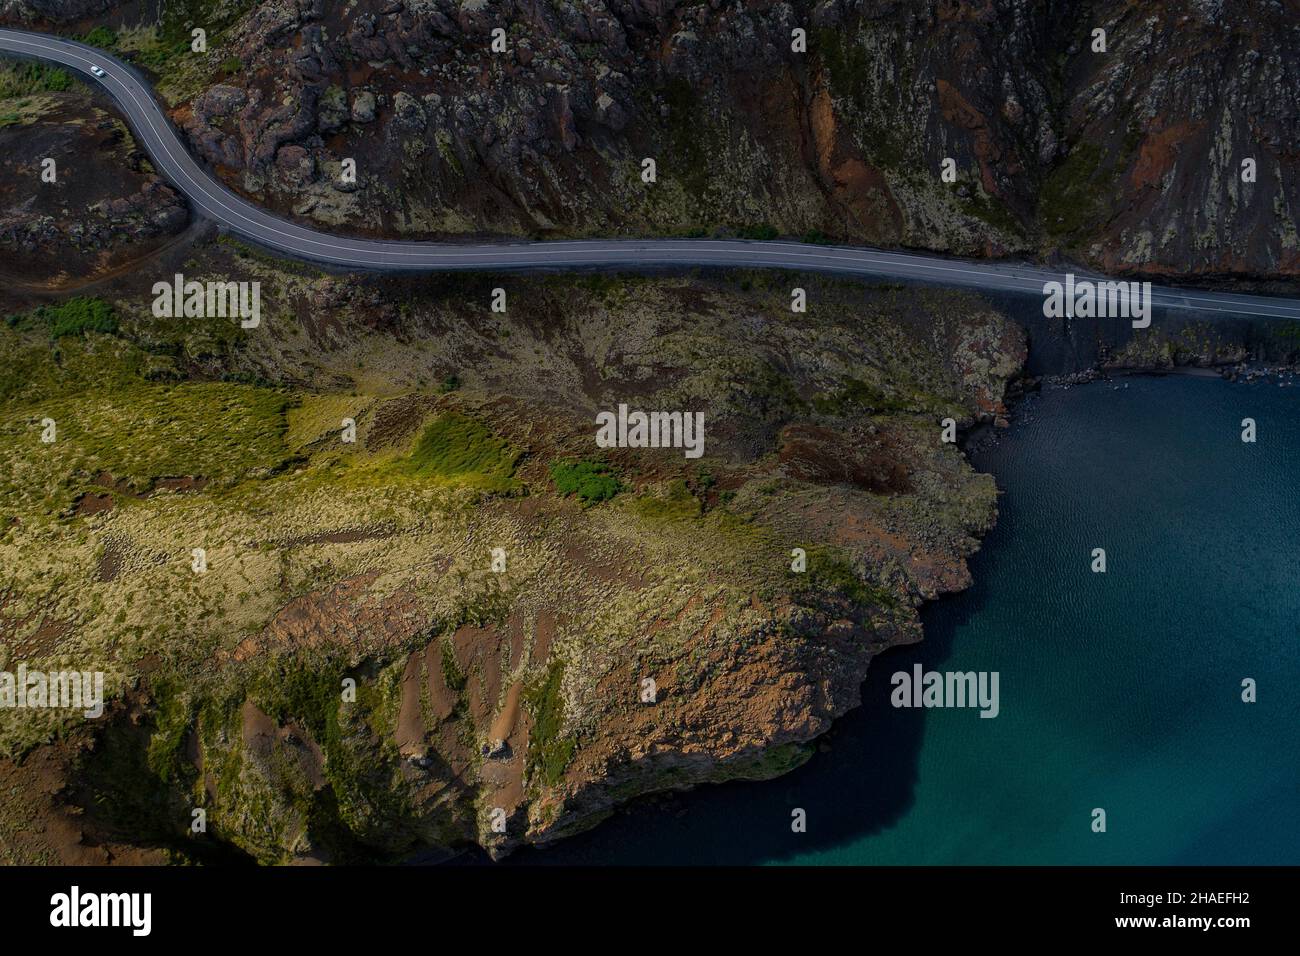 Vista aérea de una cadena montañosa en Islandia, terreno de aspecto extranjero con una carretera de asfalto que corre entre una enorme montaña y un lago Foto de stock